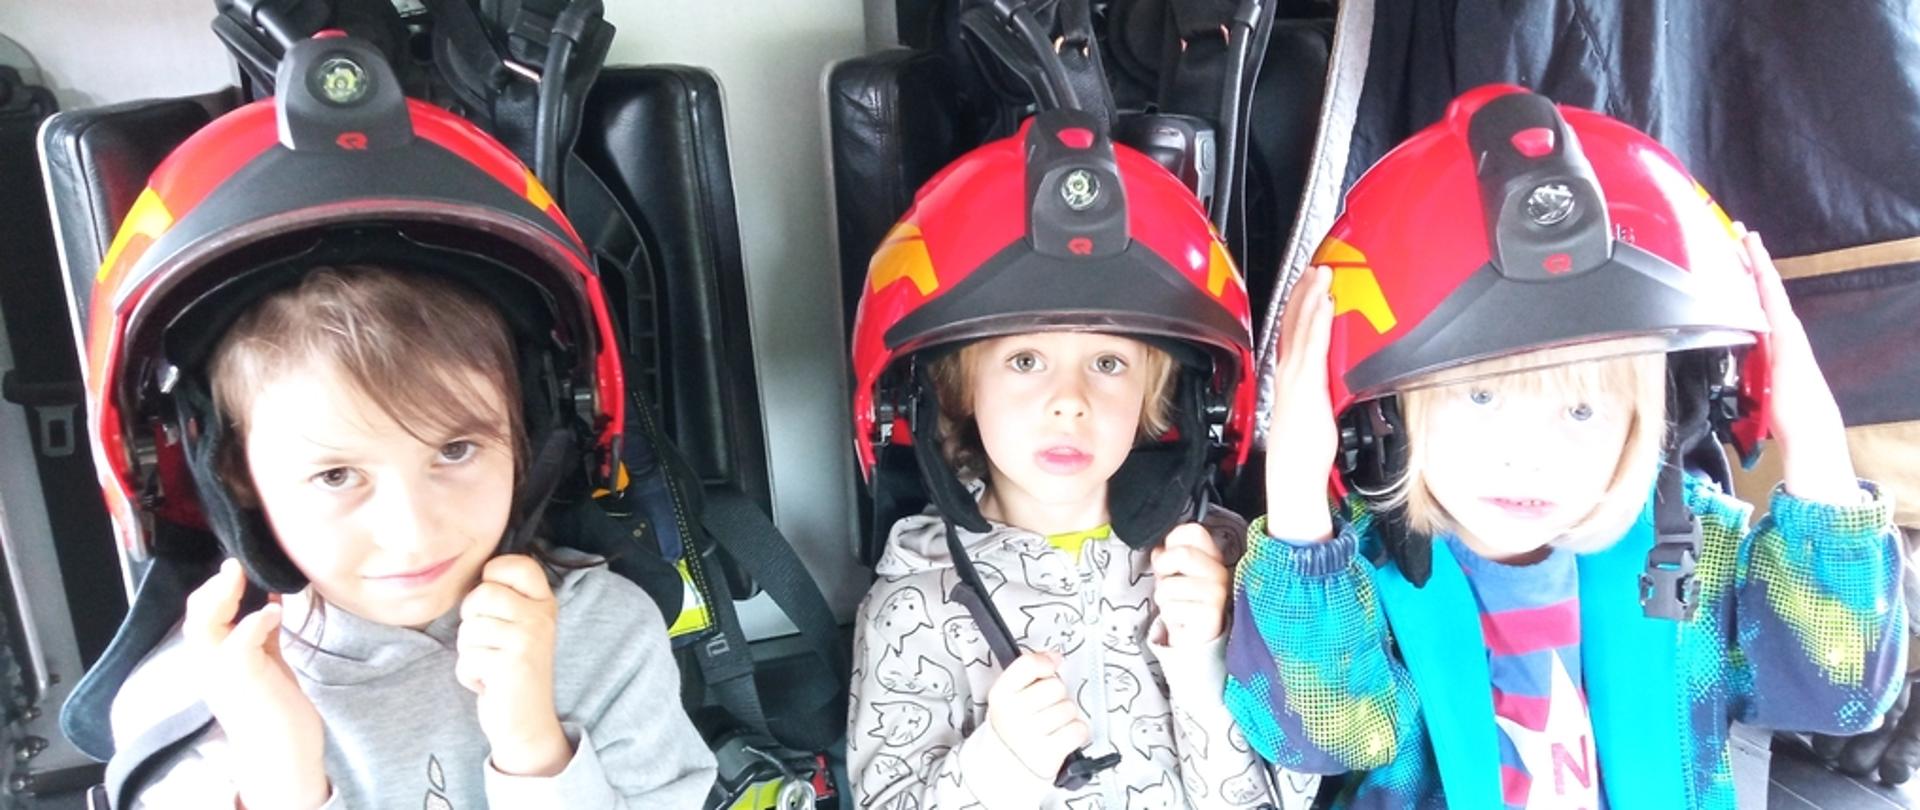 Na zdjęciu widoczne trzy dziewczynki w czerwonych hełmach strażackich siedzące w samochodzie pożarniczym.